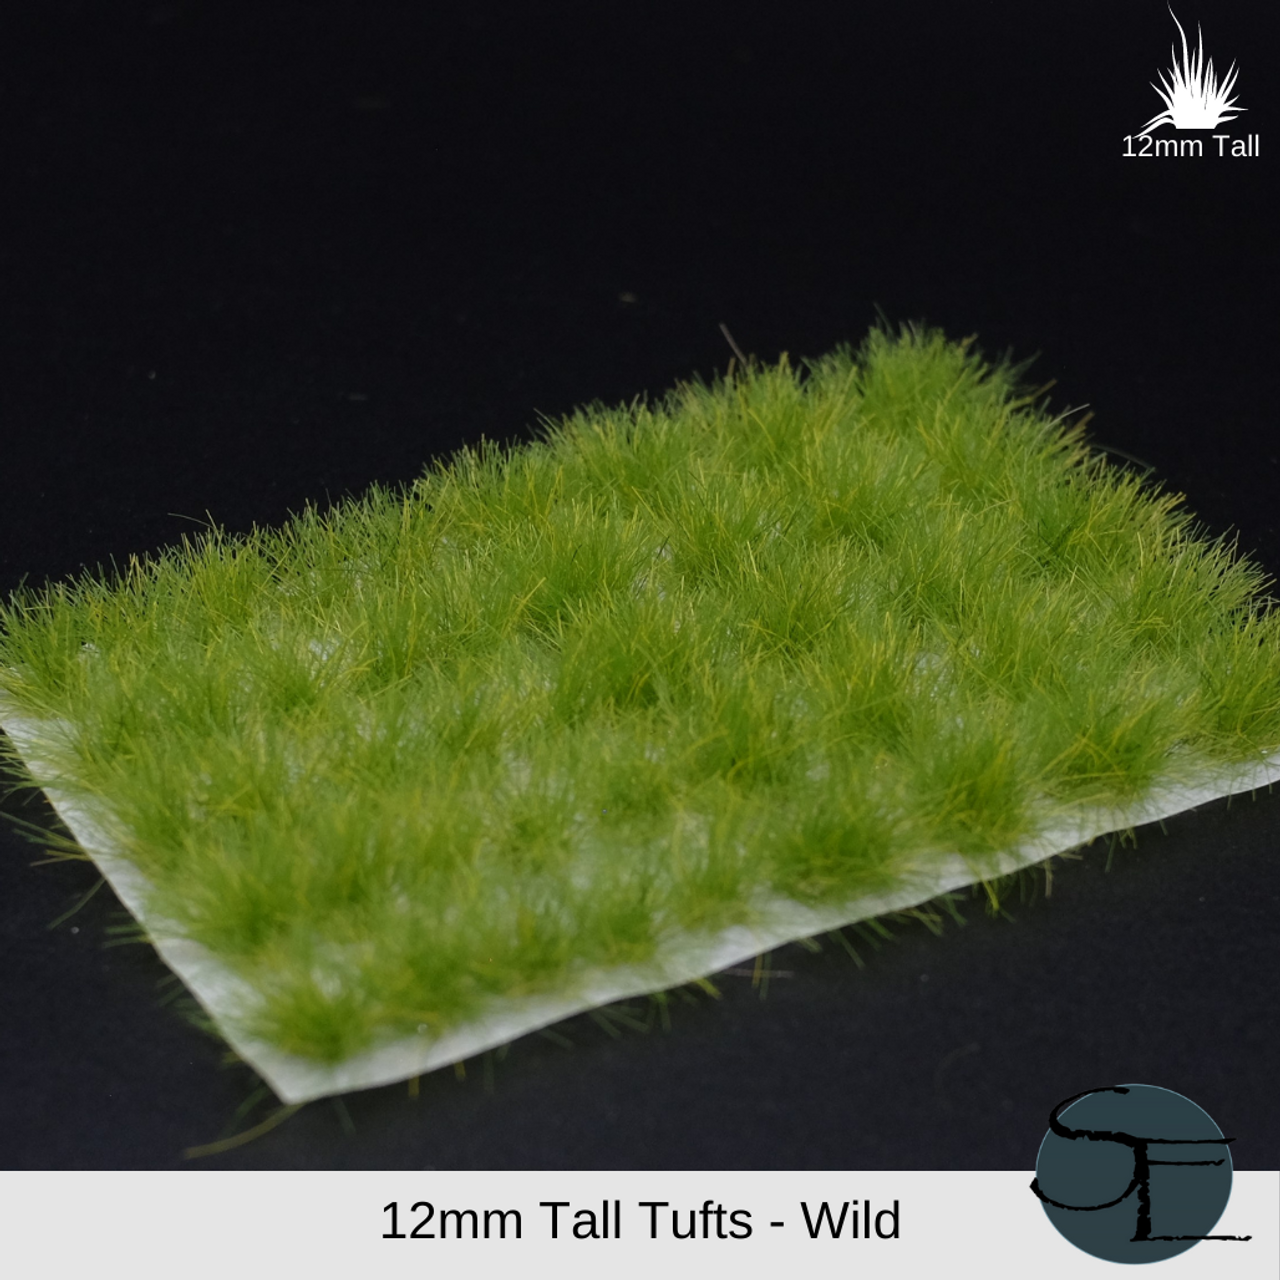 27mm Tall 22 New Tufts of Dark Wild Grass Dip38320 